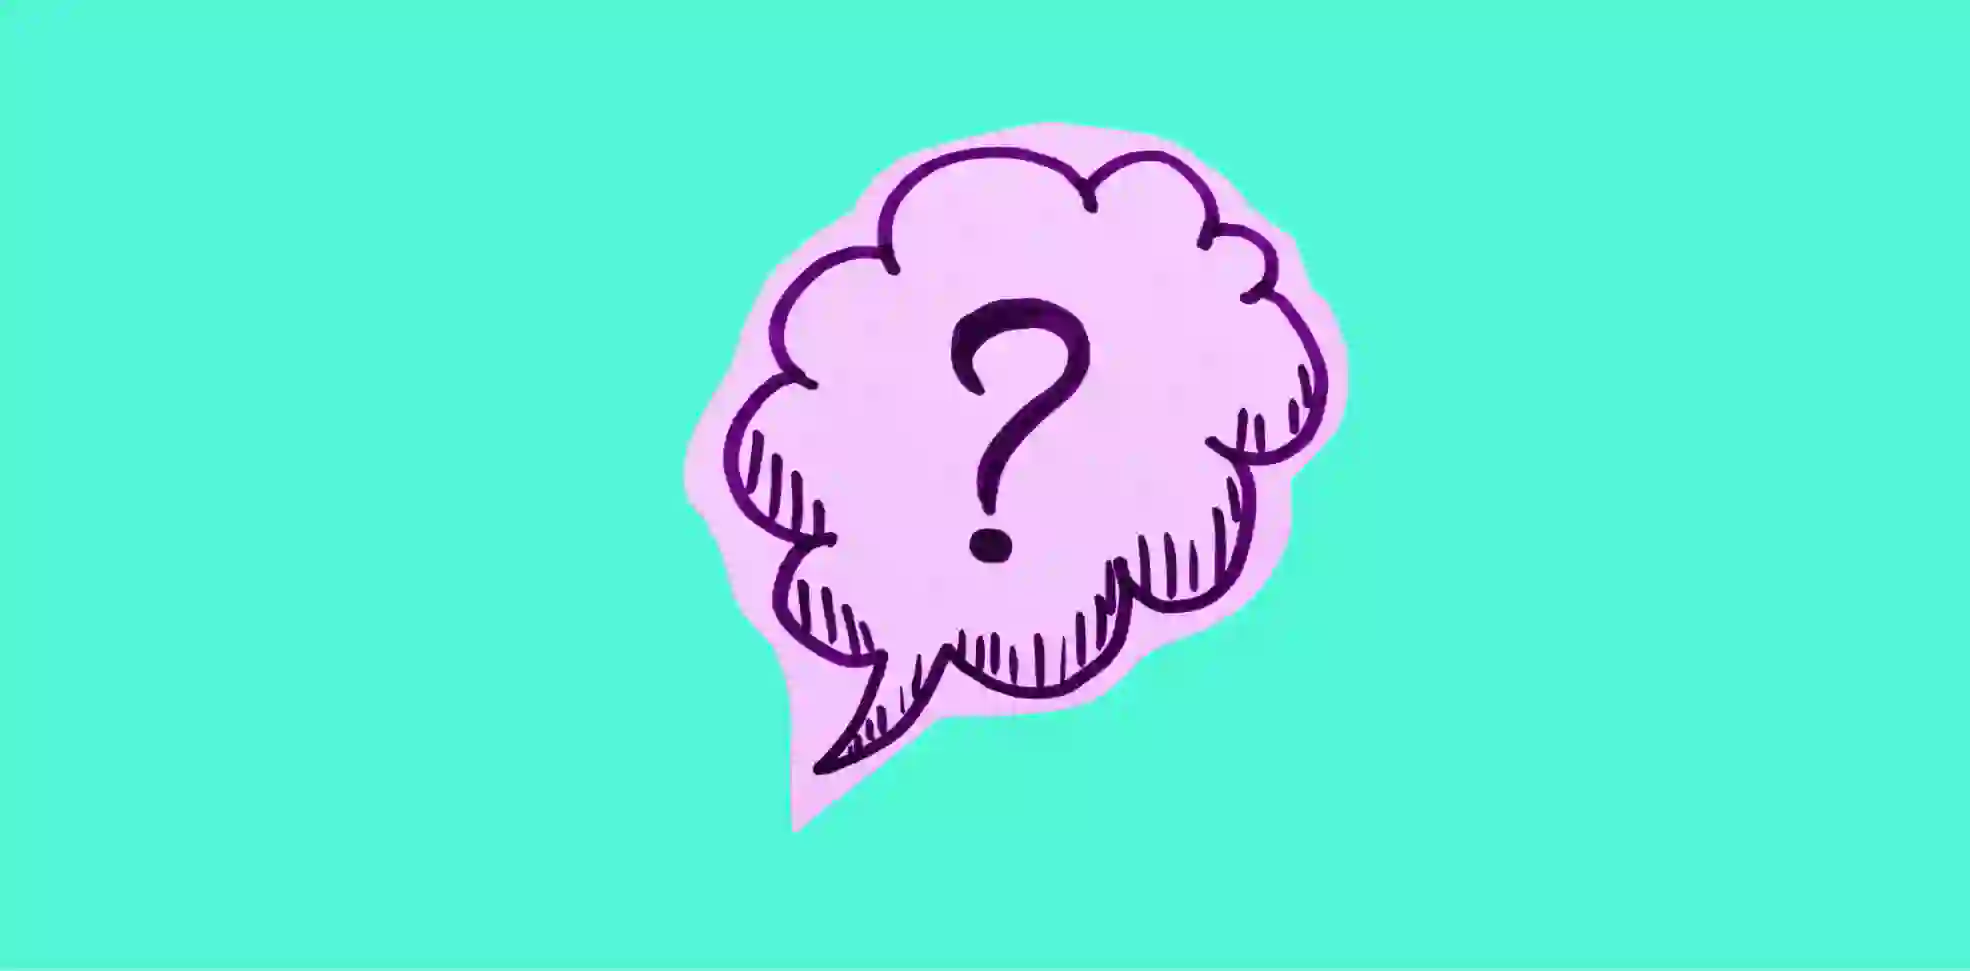 a question mark in a speech cloud